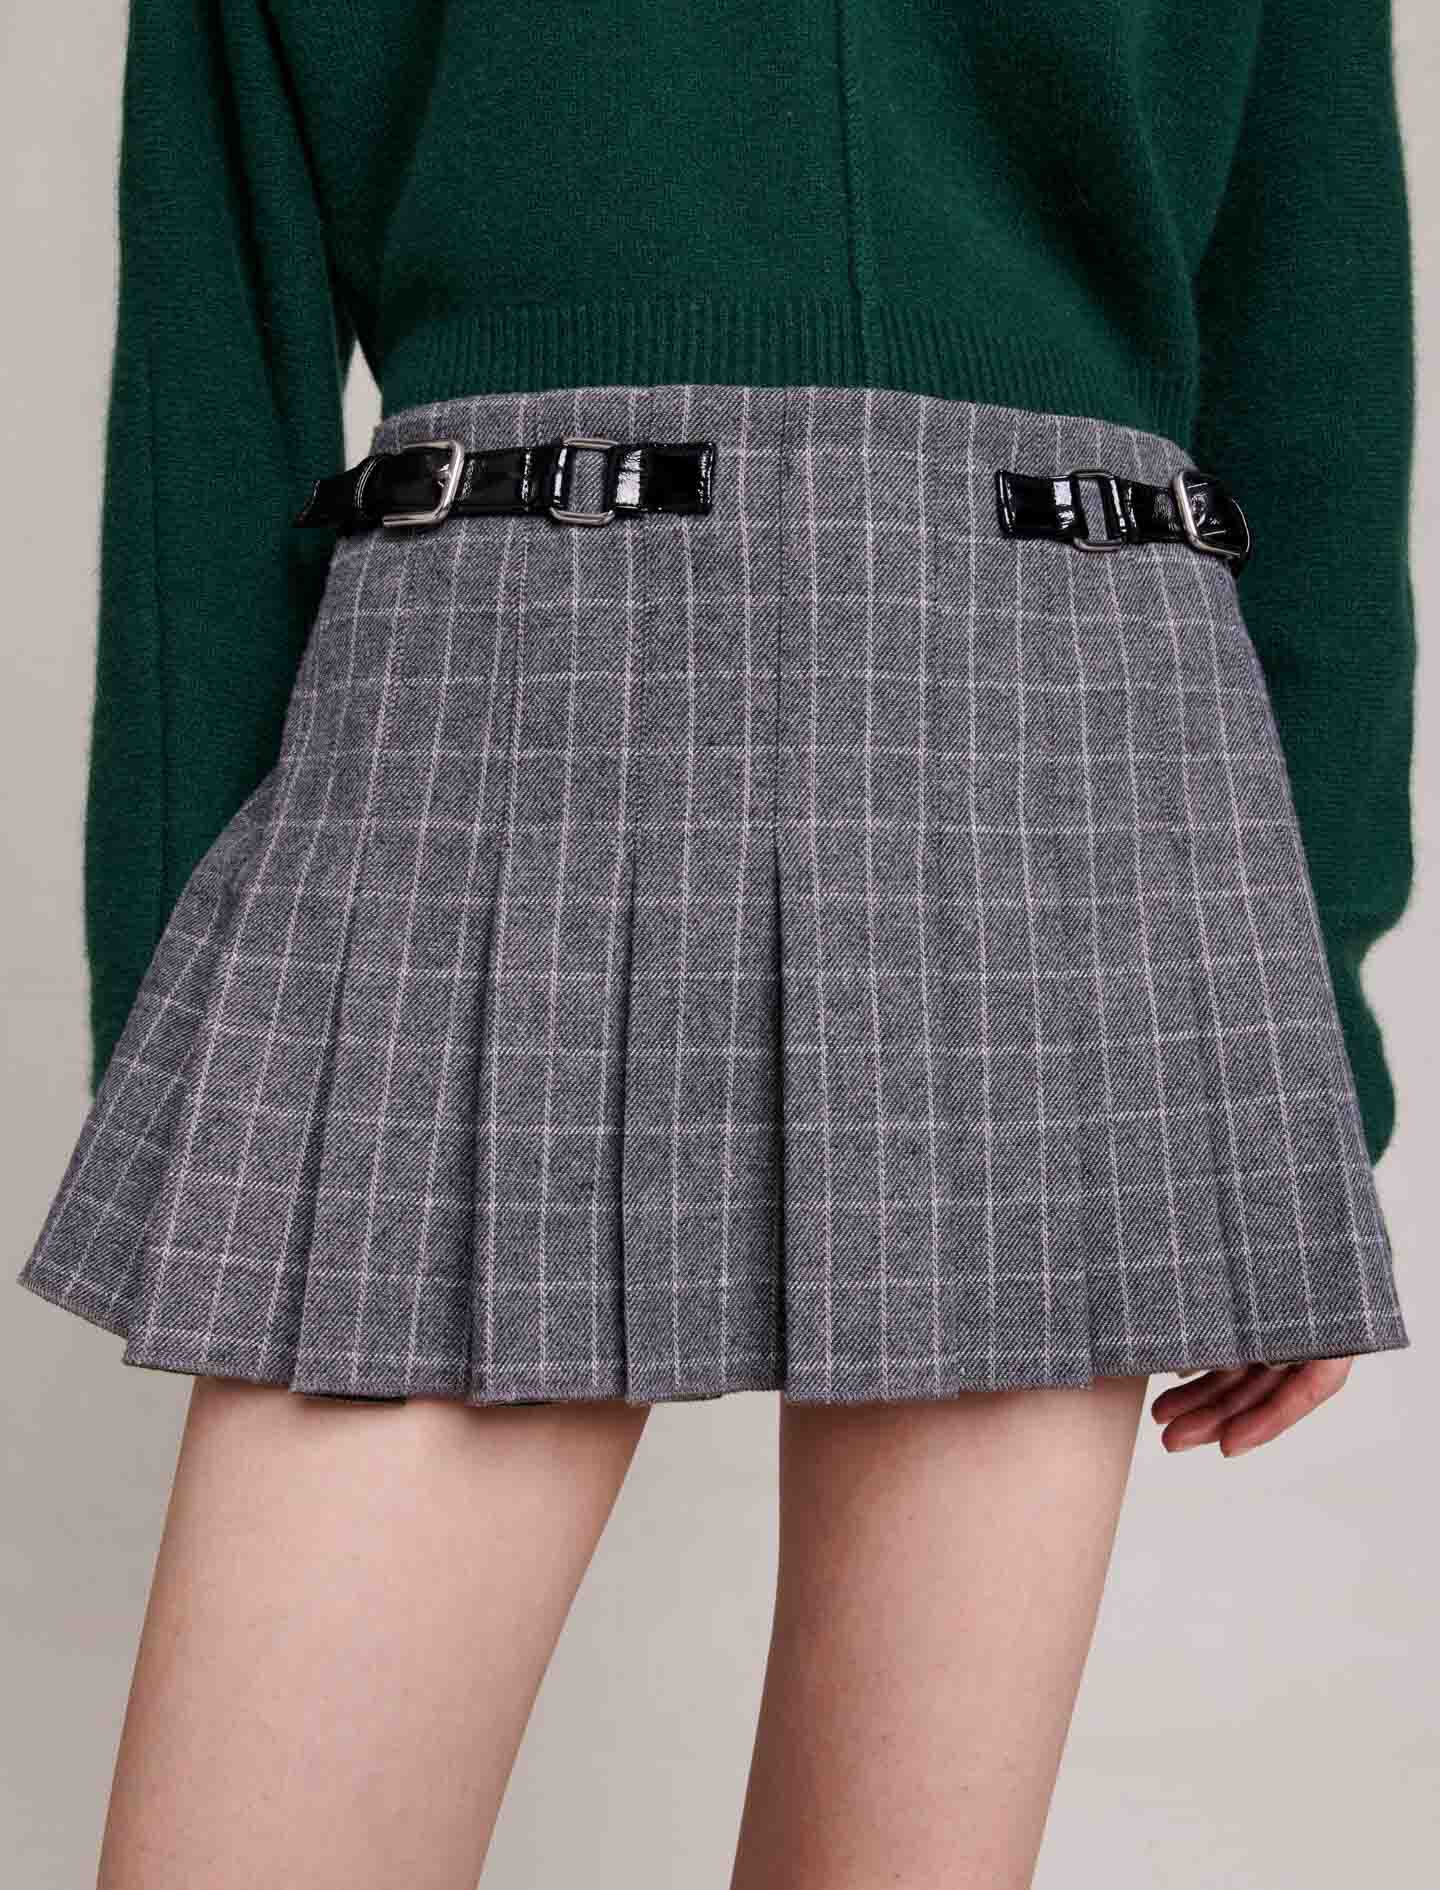 Storm Grey Linen Blend Mini Skirt - Women's A Line Skirts | Witchery